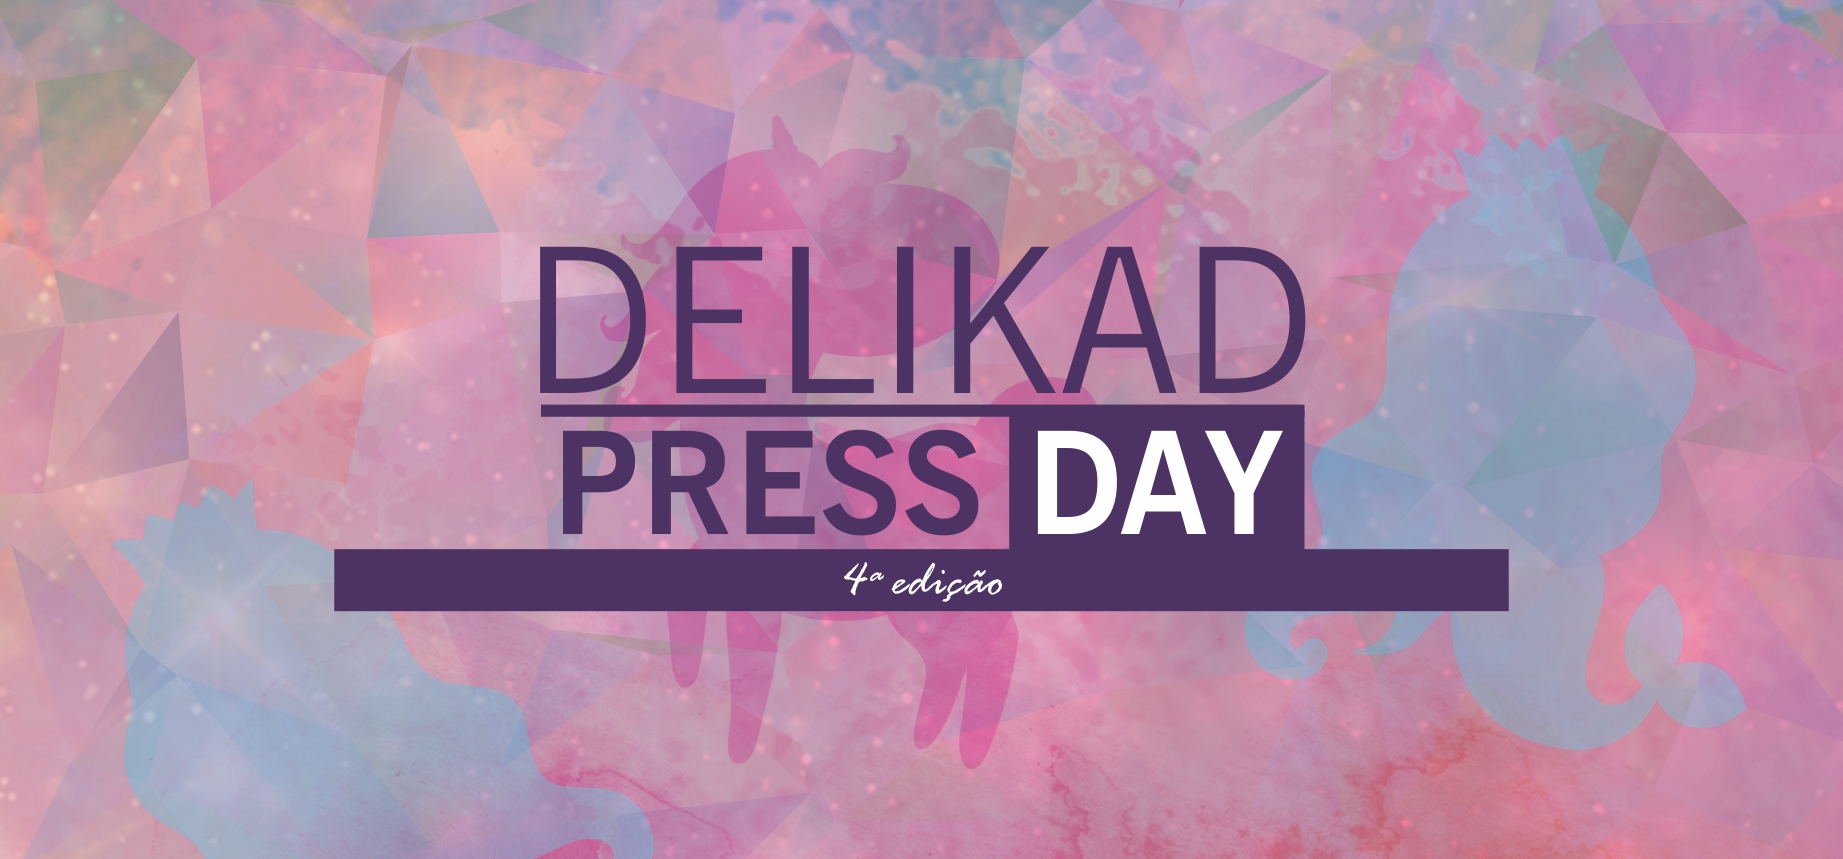 4º Press Day Delikad